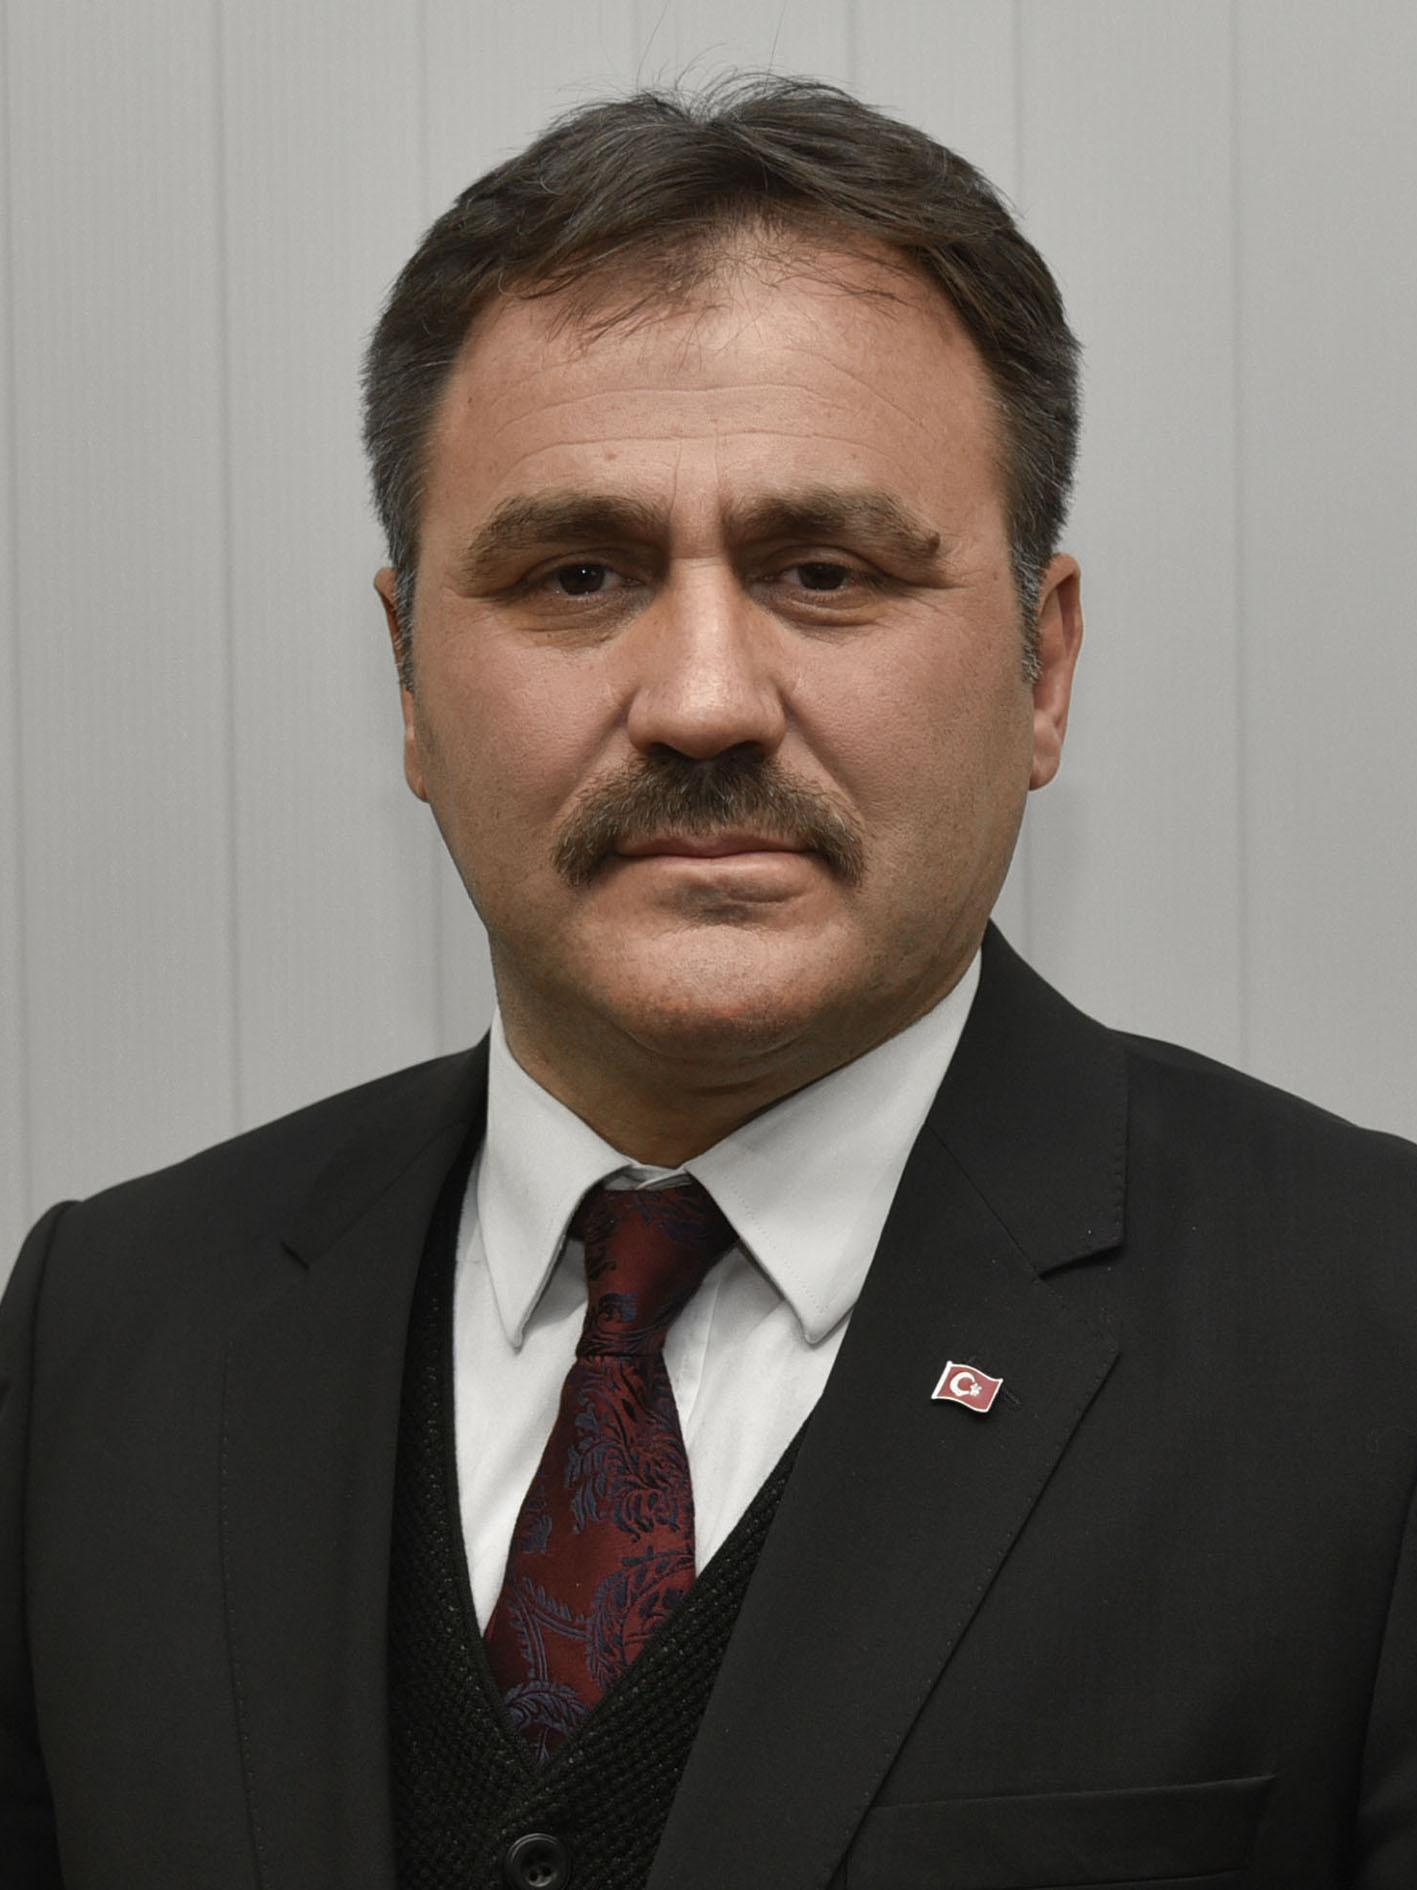 Gümüşhane Belediye Başkanlığını kesin olmayan sonuçlara göre Ercan Çimen kazandı